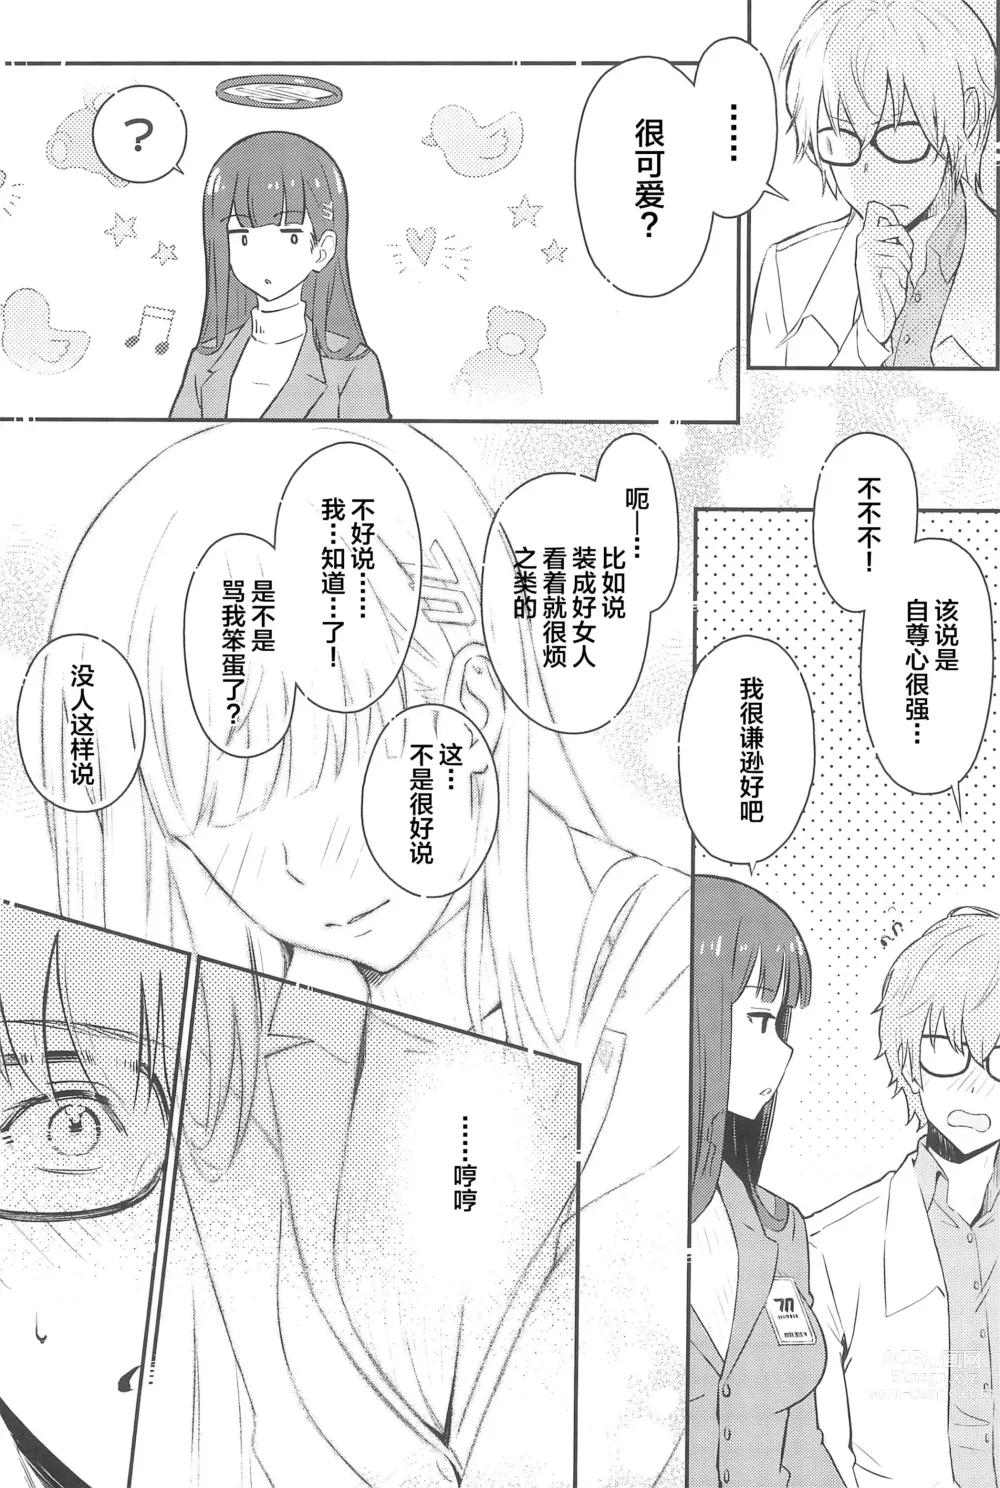 Page 5 of doujinshi Rio-chan wa Otosaretai. - Rio Want To Be Fall in Love